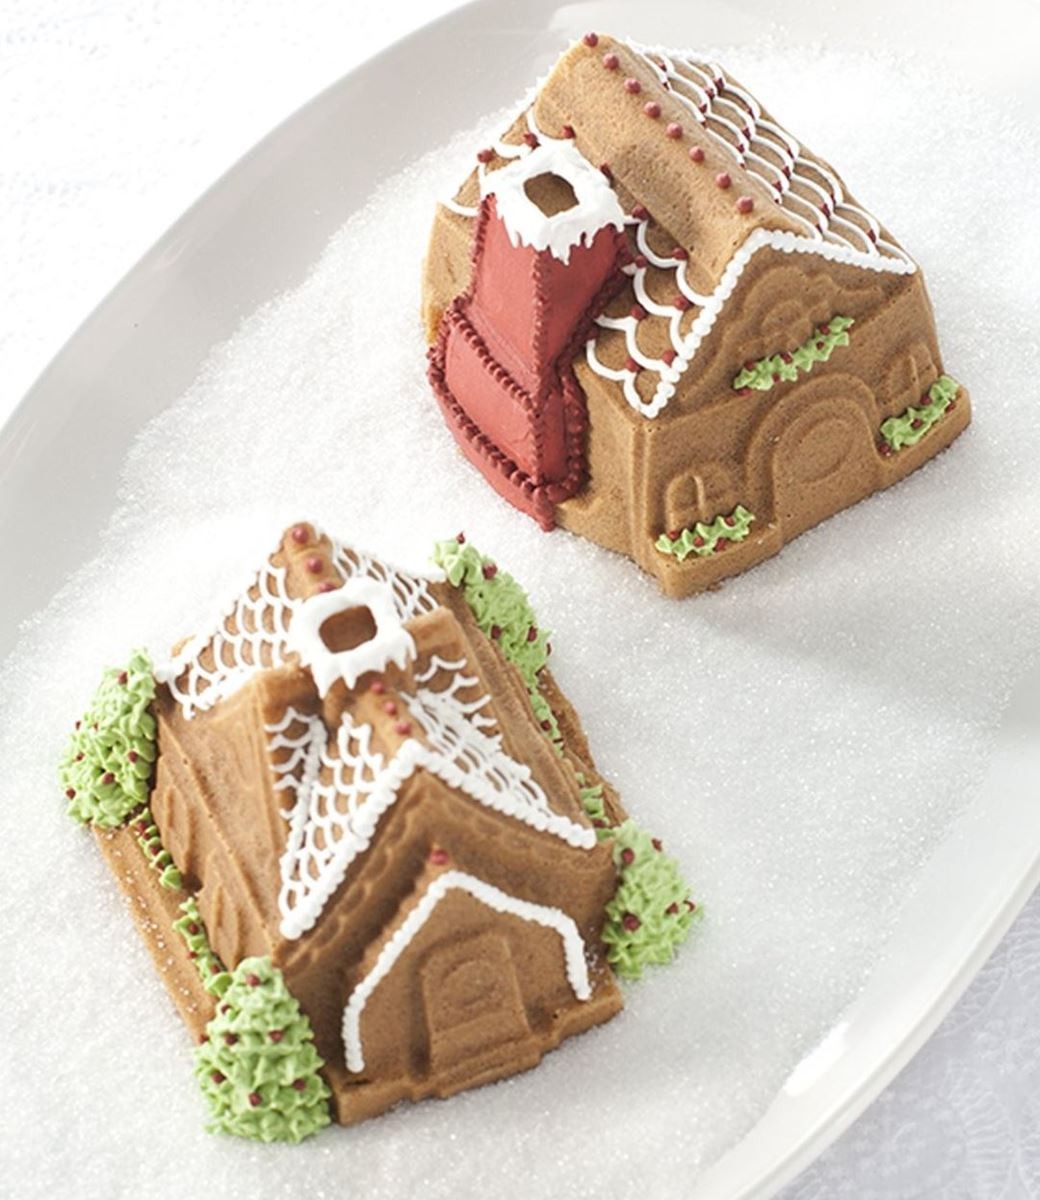 ノルディックウエア ジンジャーブレッドハウス デュエット パン ケーキ型 Nordic Ware Gingerbread House Duet Pan  86748 :1005169:akt8 通販 